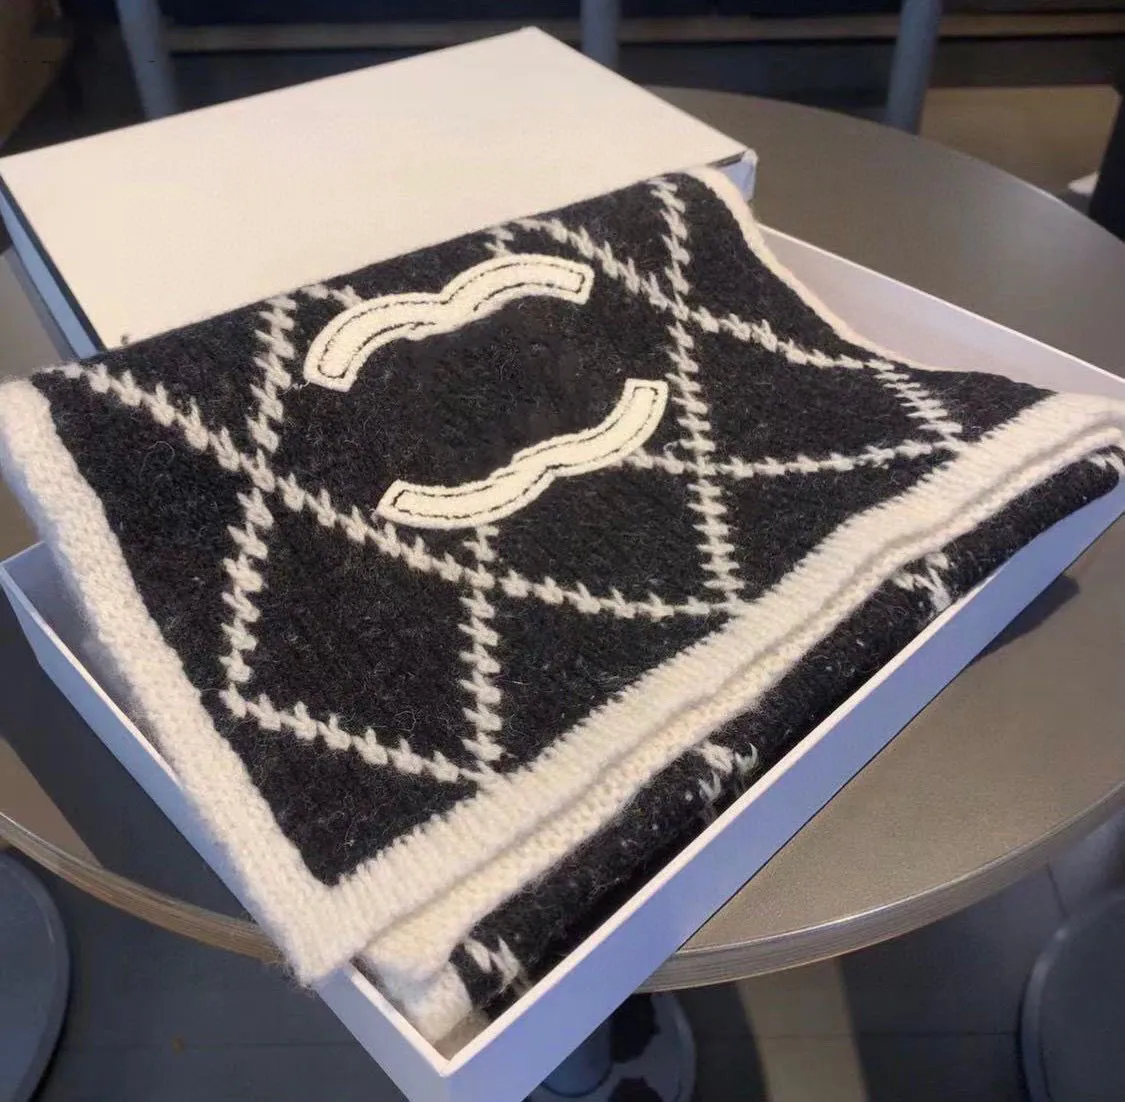 2023 Diamond -karierte Schals für Männer und Frauen mit Mänteln, um sich warm zu halten